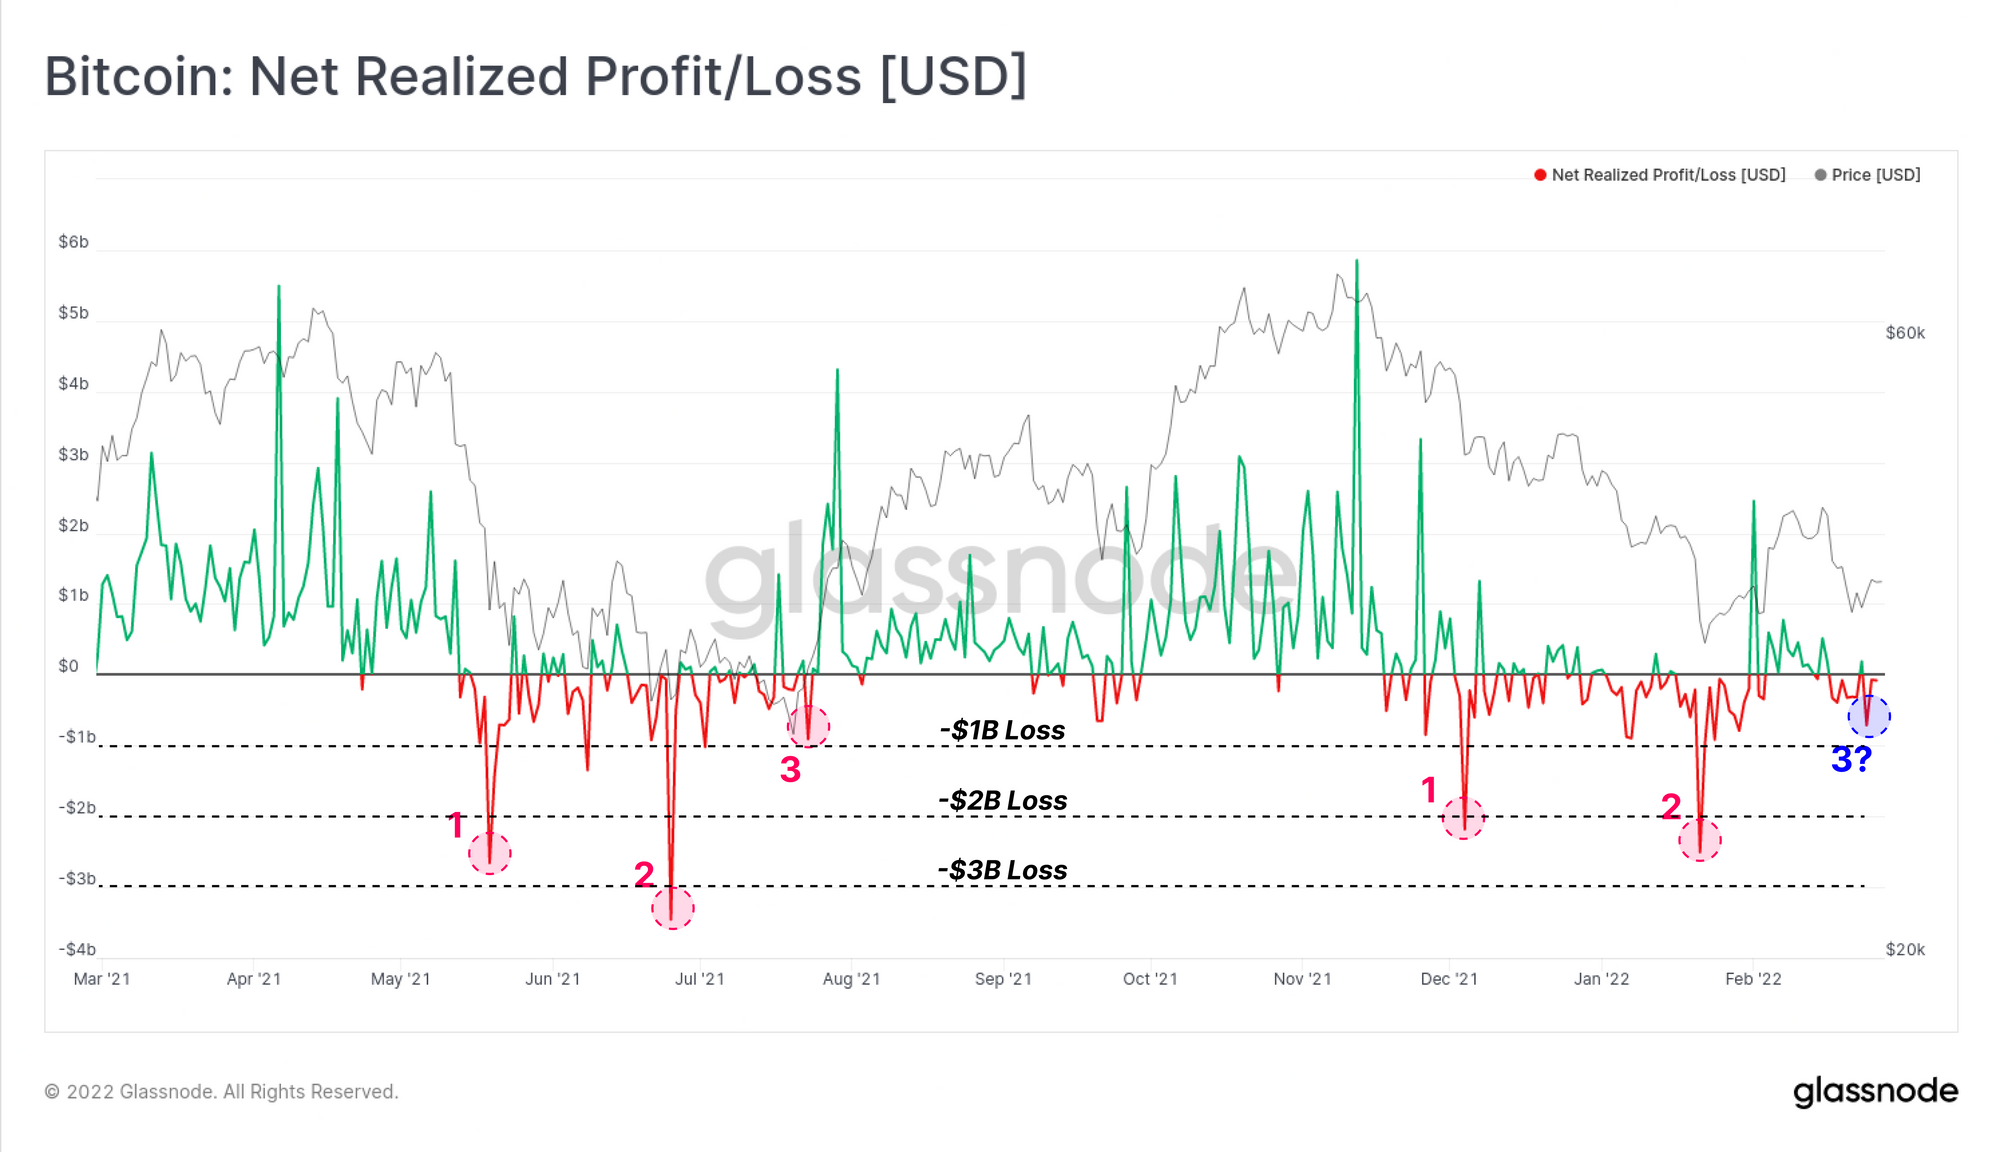 Bitcoin Net Realized Profit/Loss